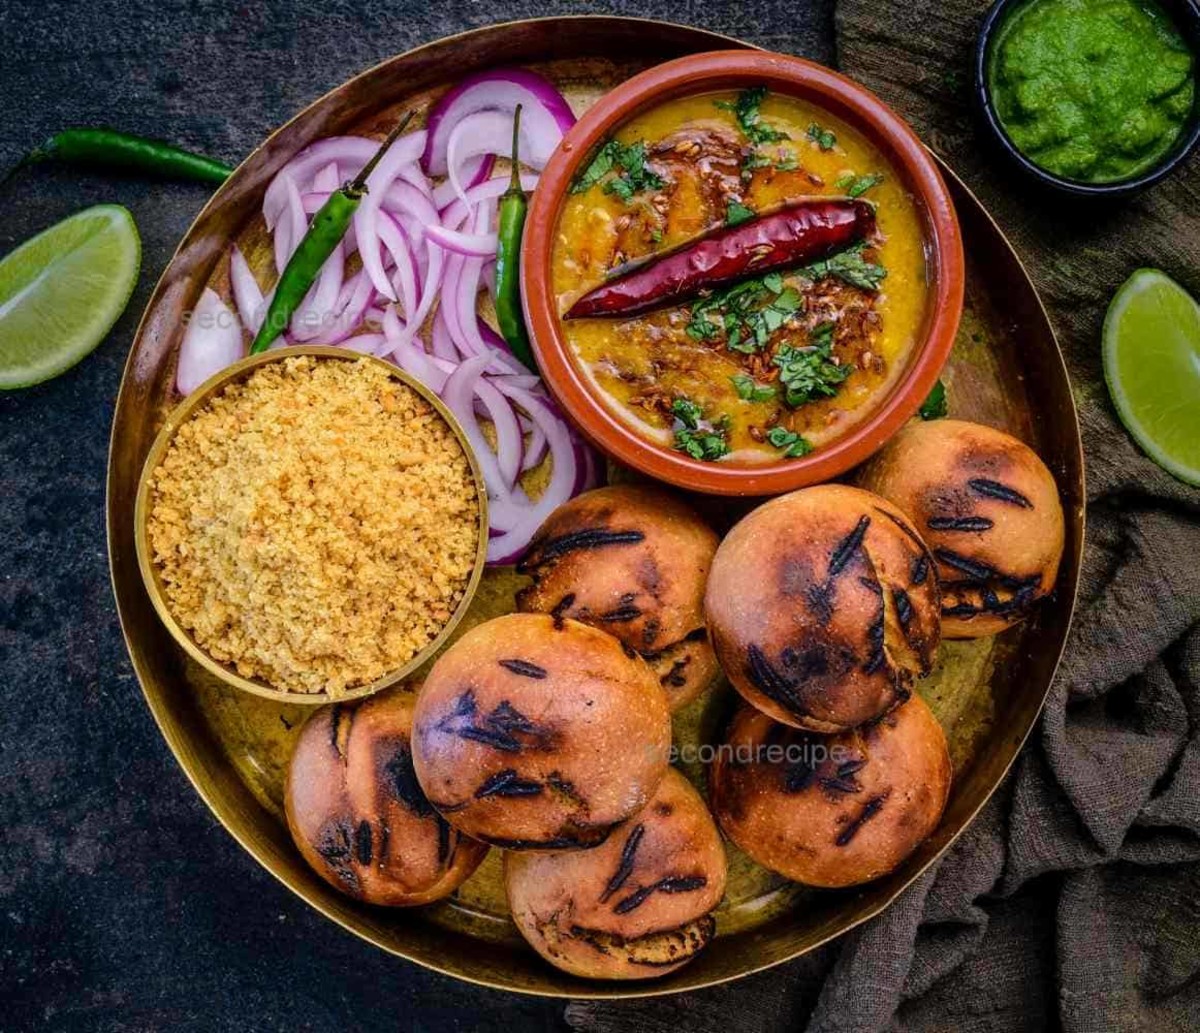 Marvelous Foods of Rajasthan